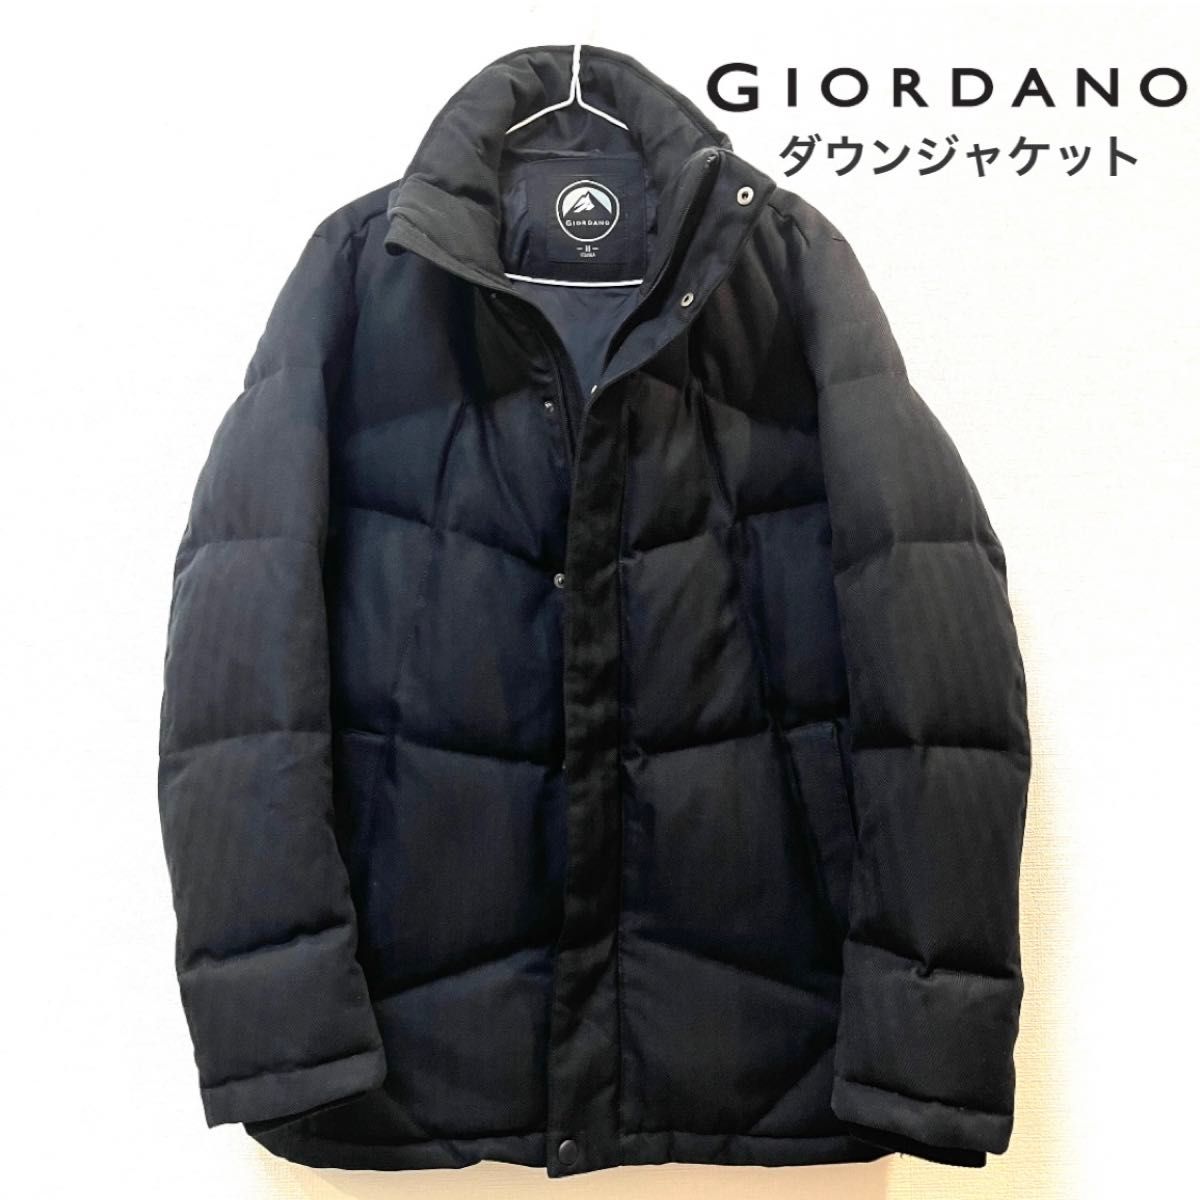 【美品】GIORDANO(ジョルダーノ) ツイード素材ダウンジャケット ブラック 黒 アウター コート ブルゾン ハイネック